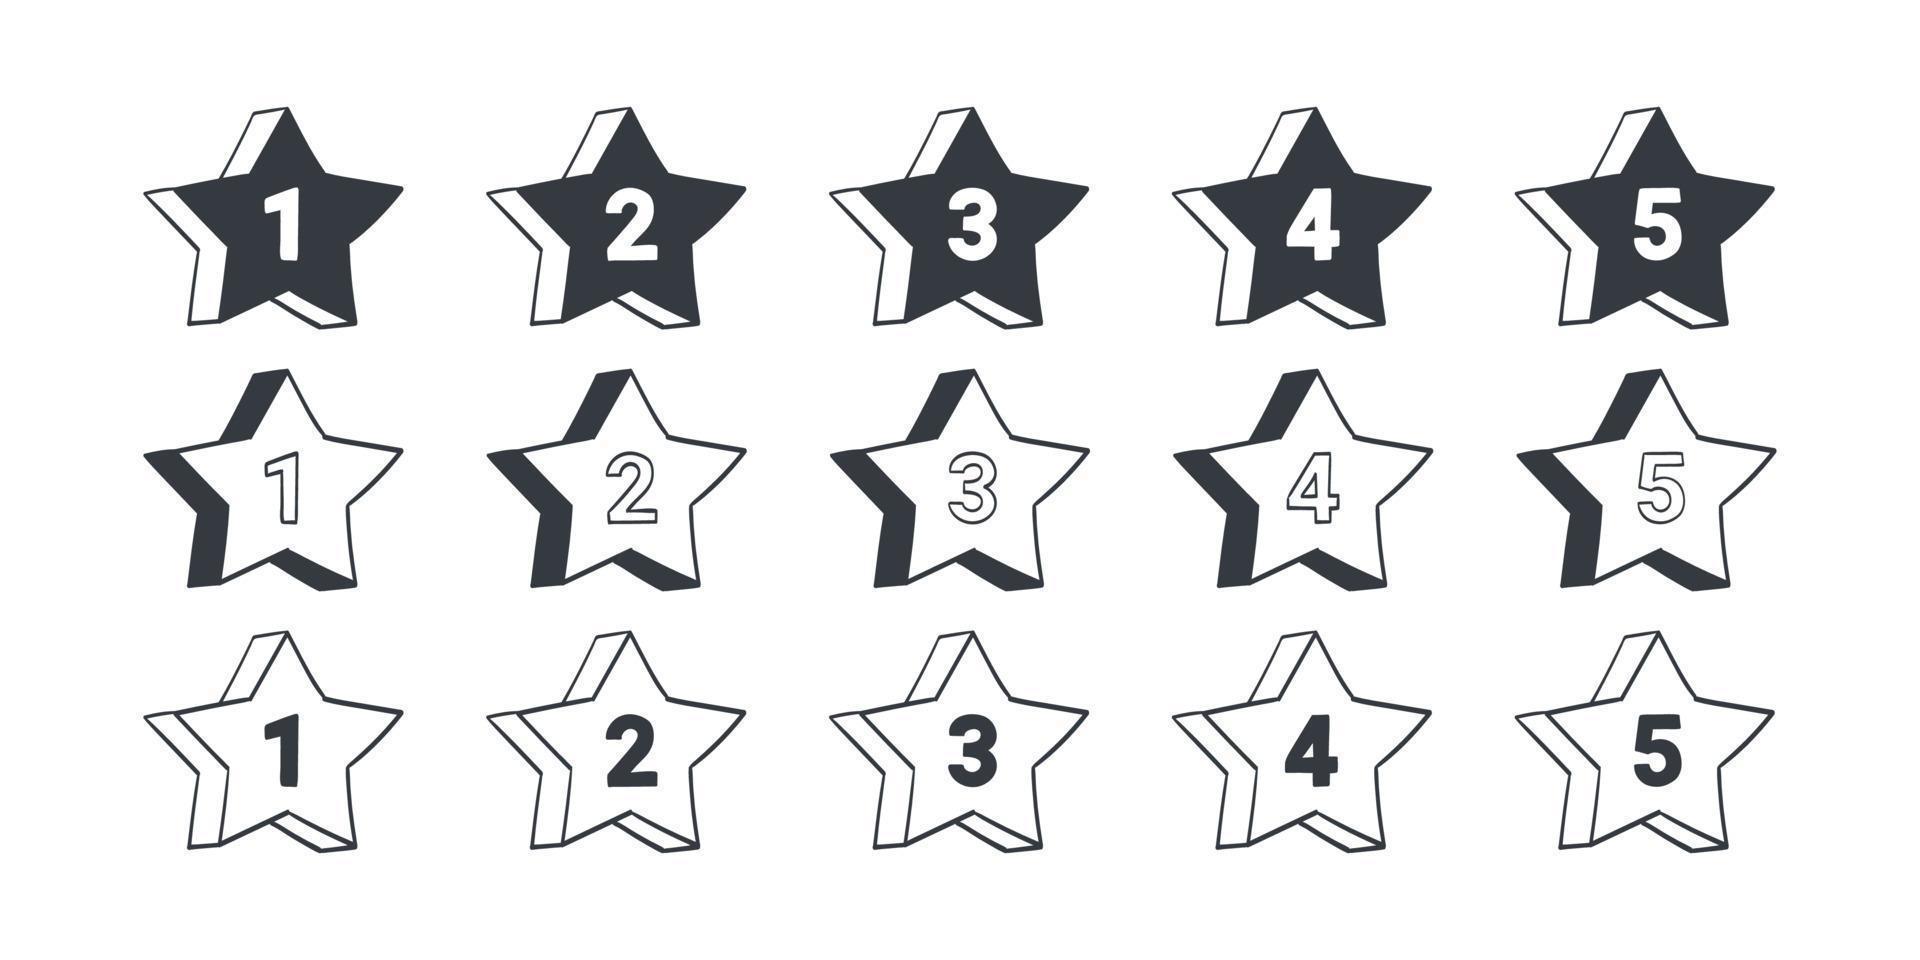 signos de calificación. iconos de calificación de calidad de estrellas. iconos dibujados de estrellas. ilustración vectorial vector